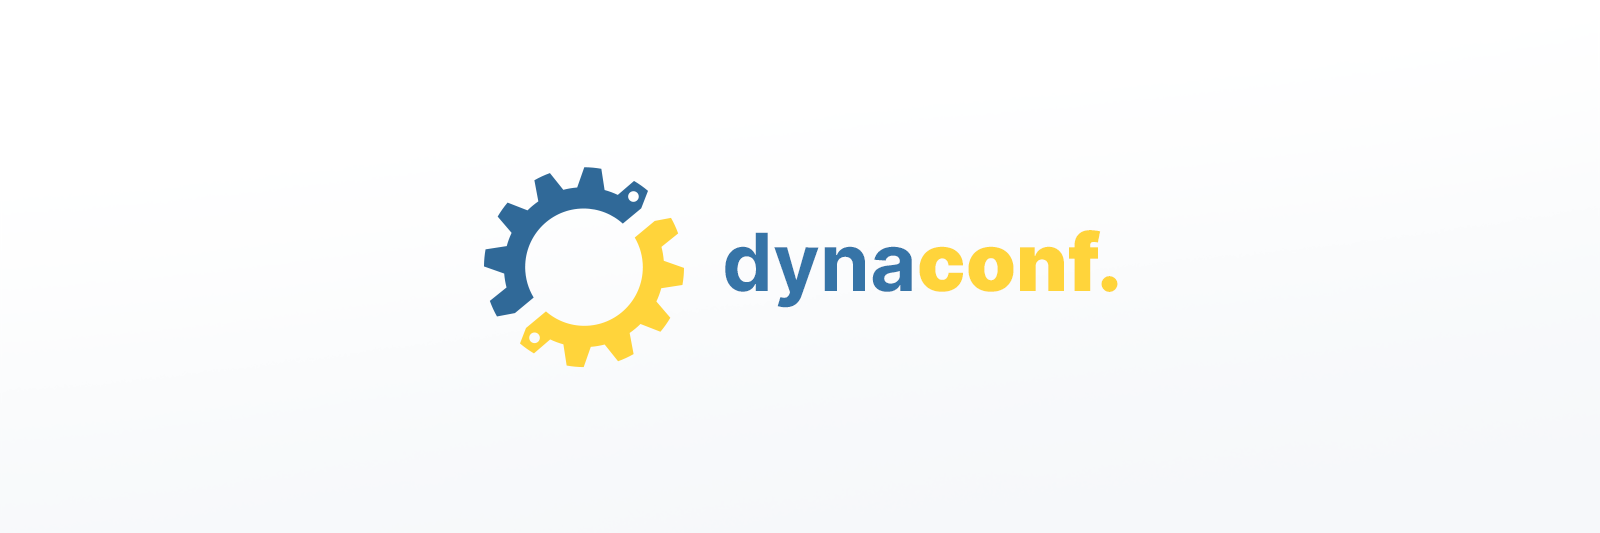 dynaconf. new logo